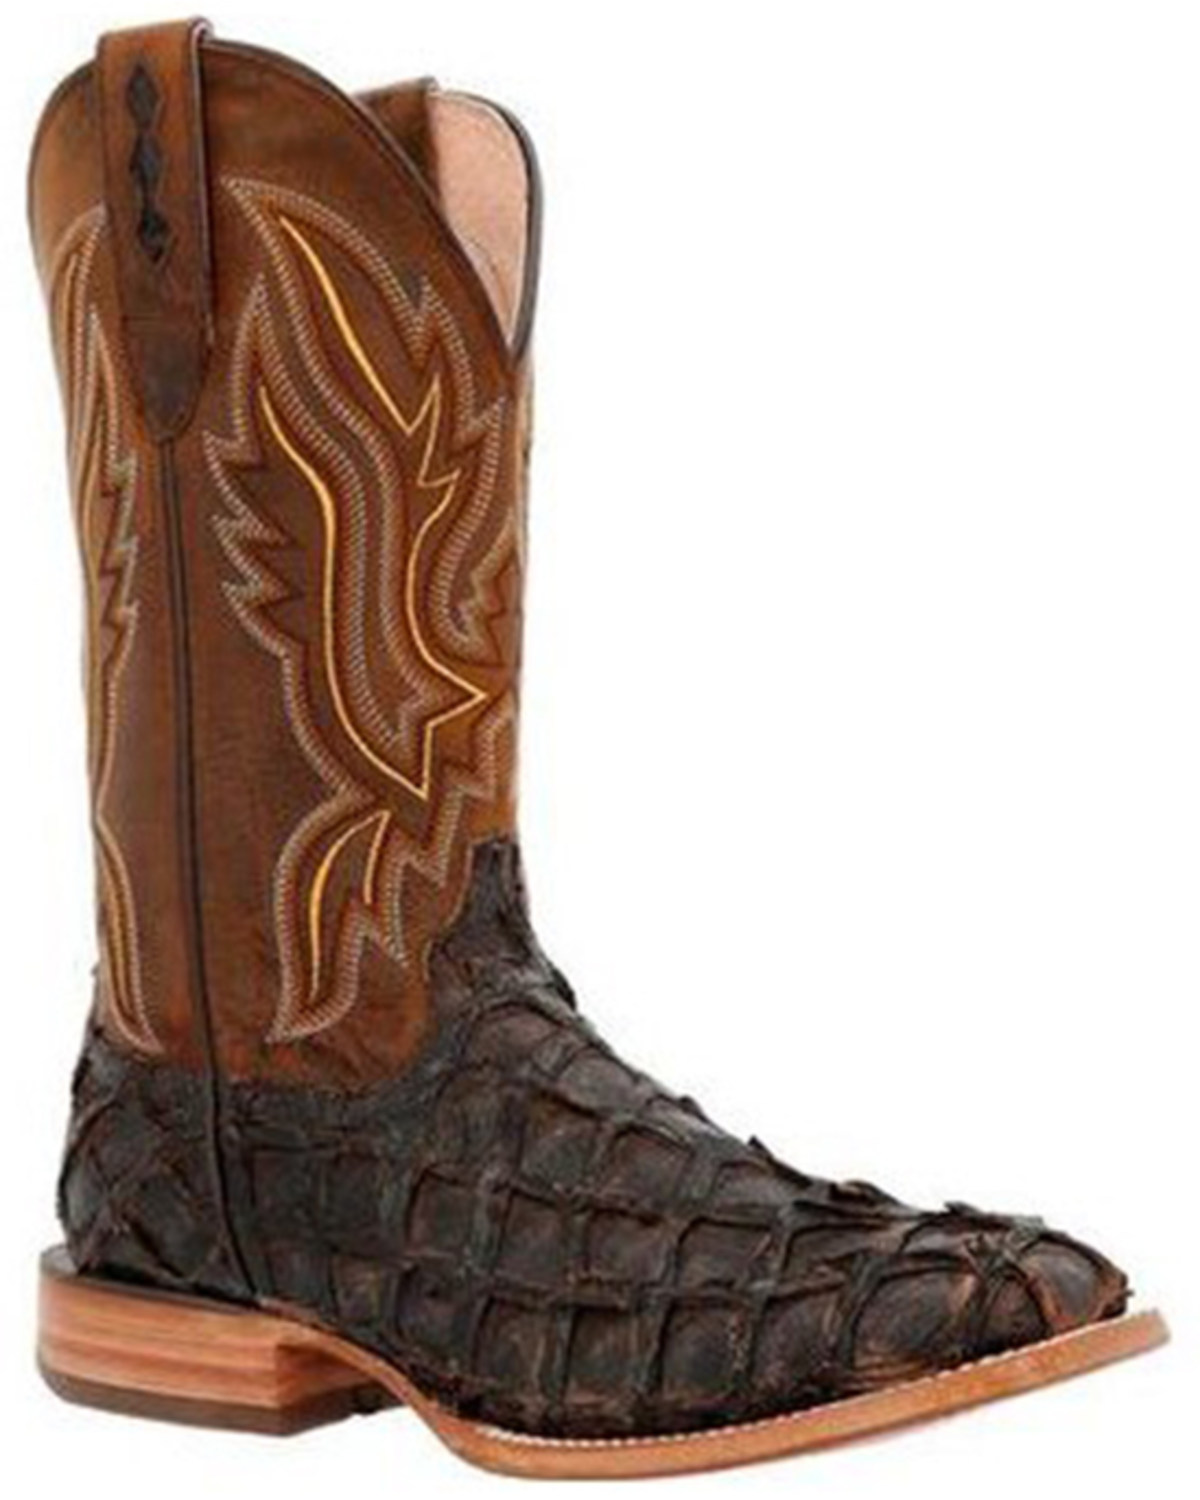 Durango Men's Exotic Pirarucu Skin Western Boots - Broad Square Toe